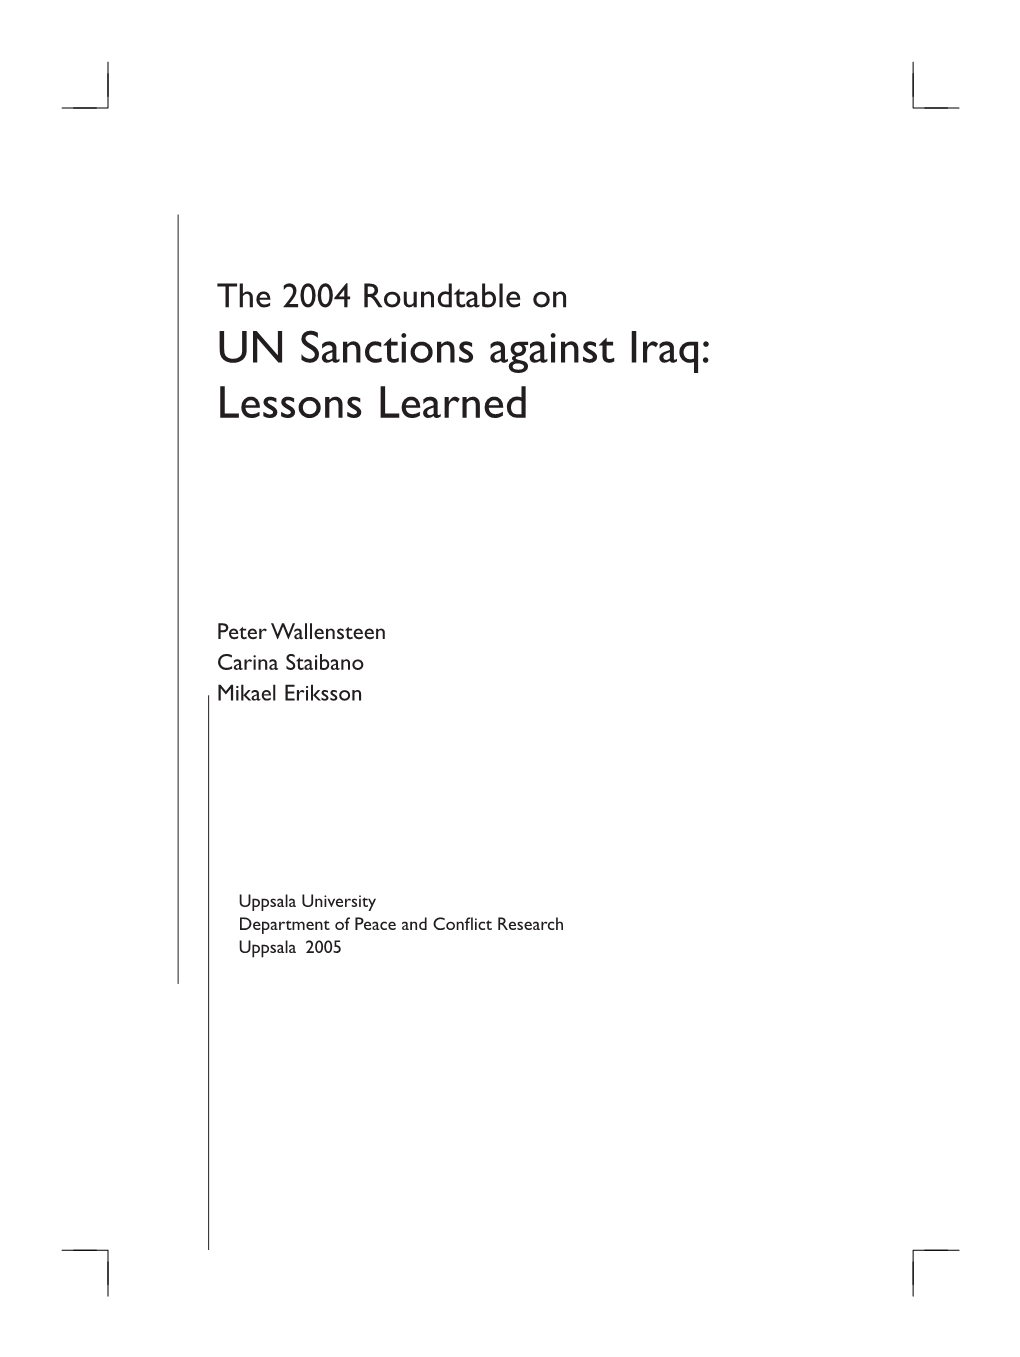 UN Sanctions Against Iraq: Lessons Learned UN Sanctions Against Iraq: Lessons Learned Xxxi